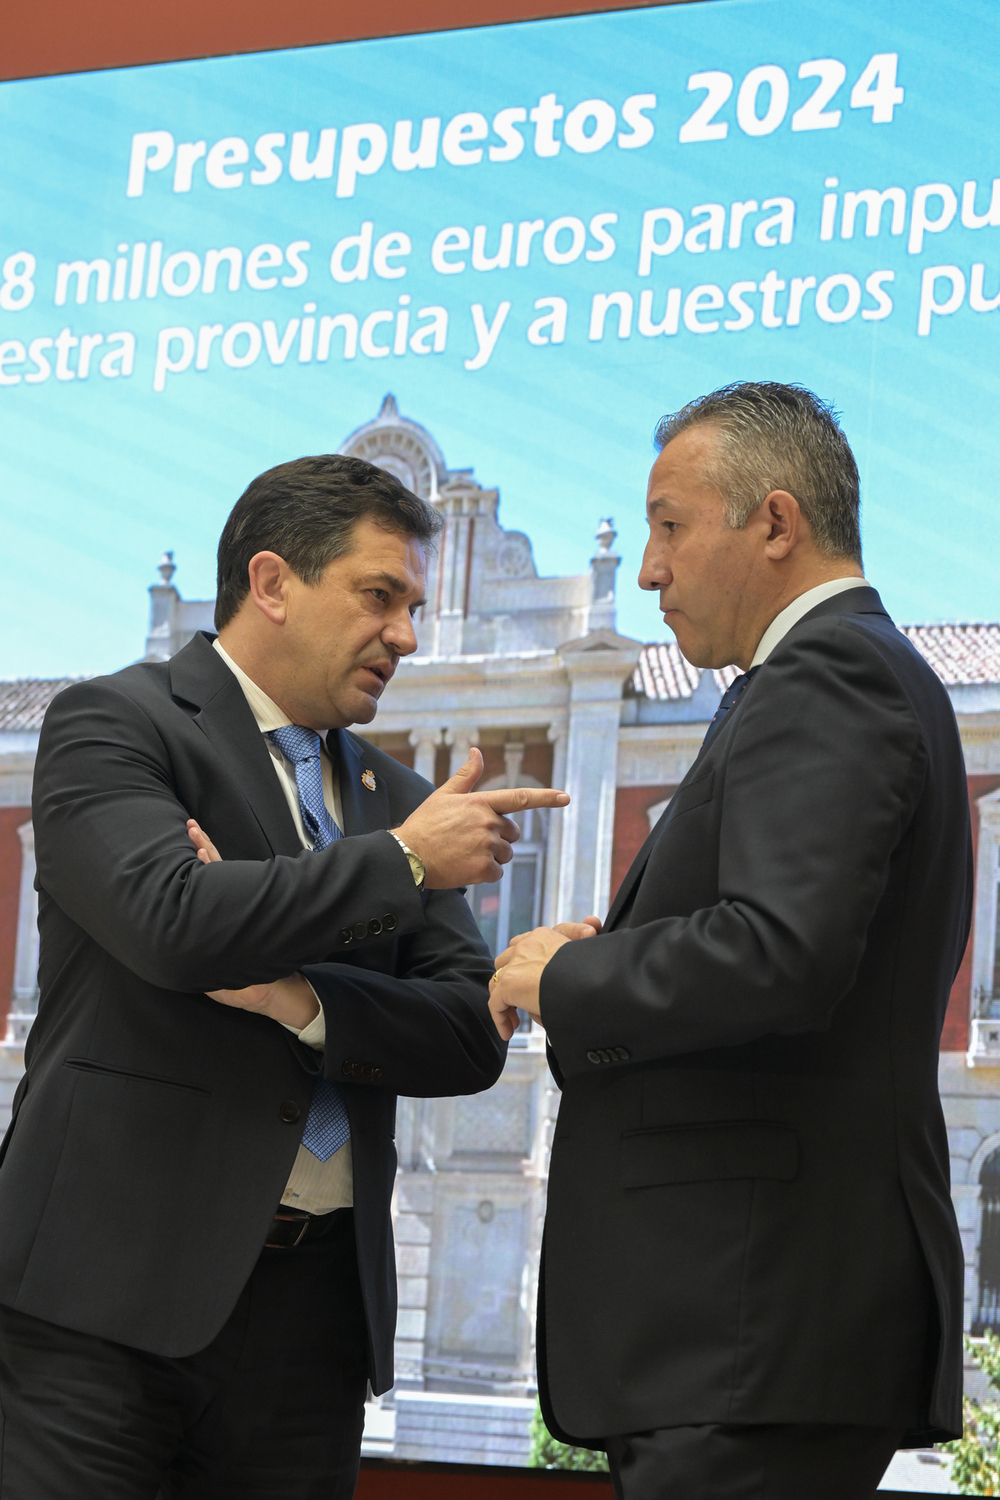 La Diputación tendrá un presupuesto de 148 millones en 2024 